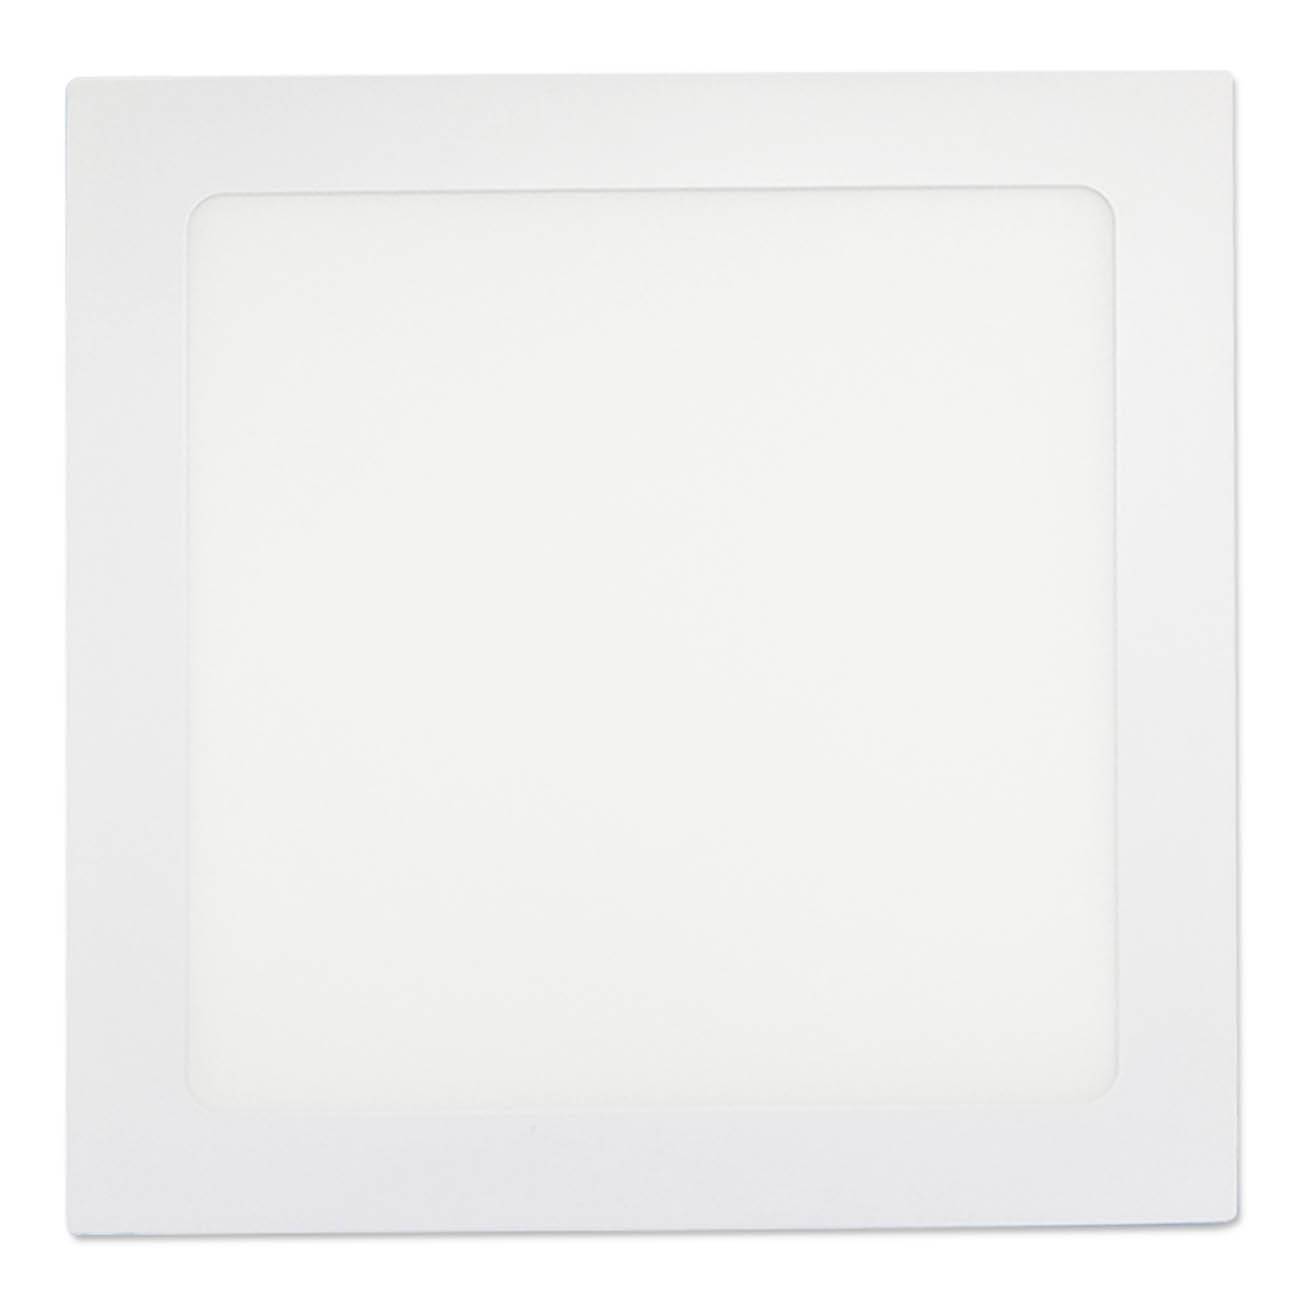 Luminária Plafon Led Embutir Slim Quadrado 18w Branco Frio